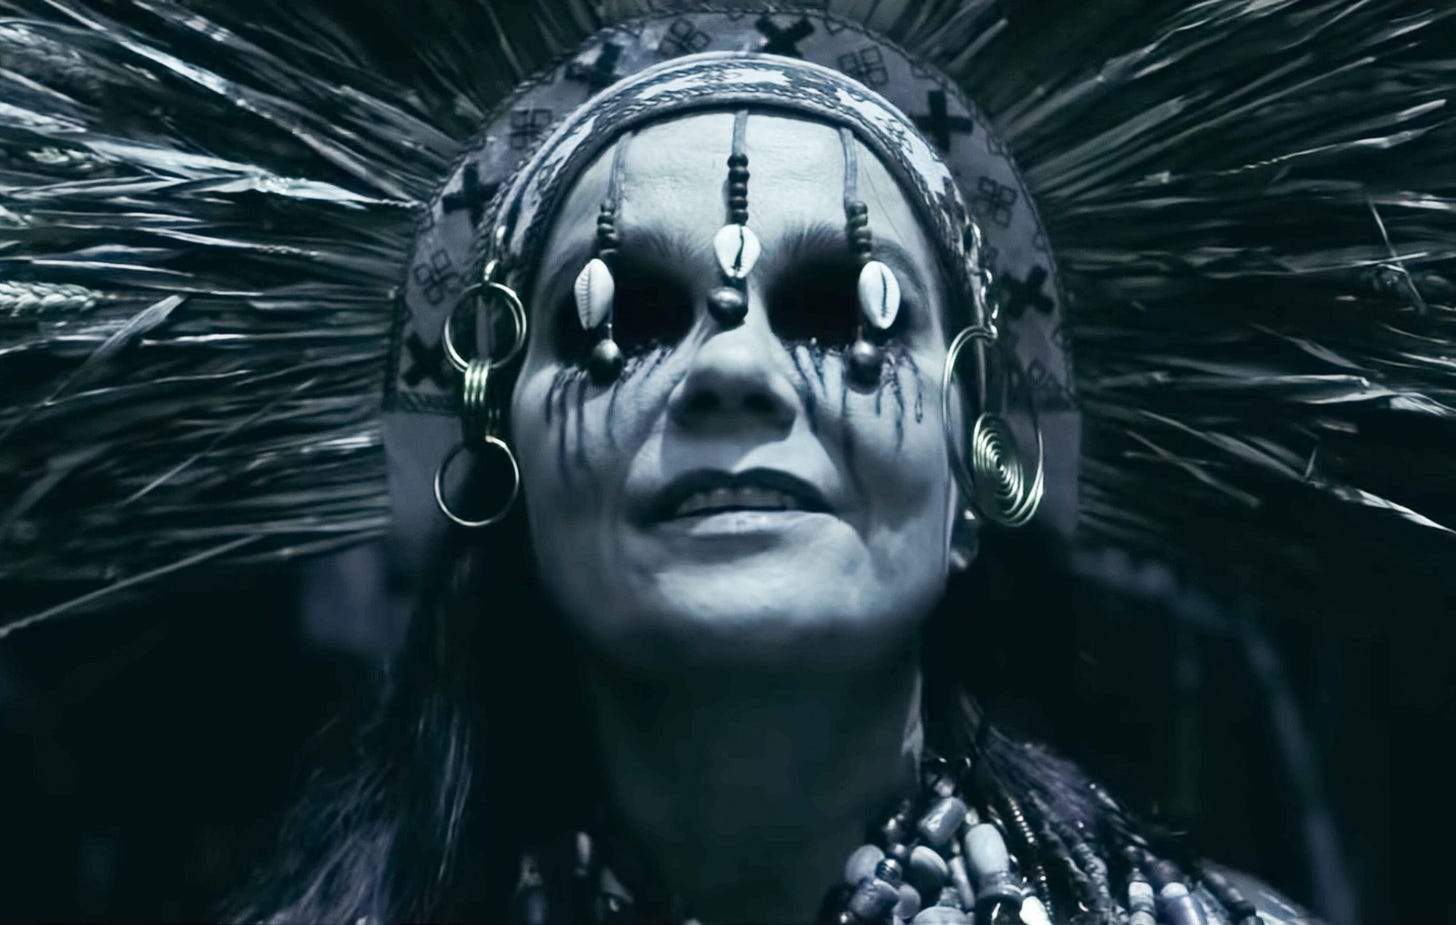 Alexander Skarsgård on working with "incredible" Björk in 'The Northman'